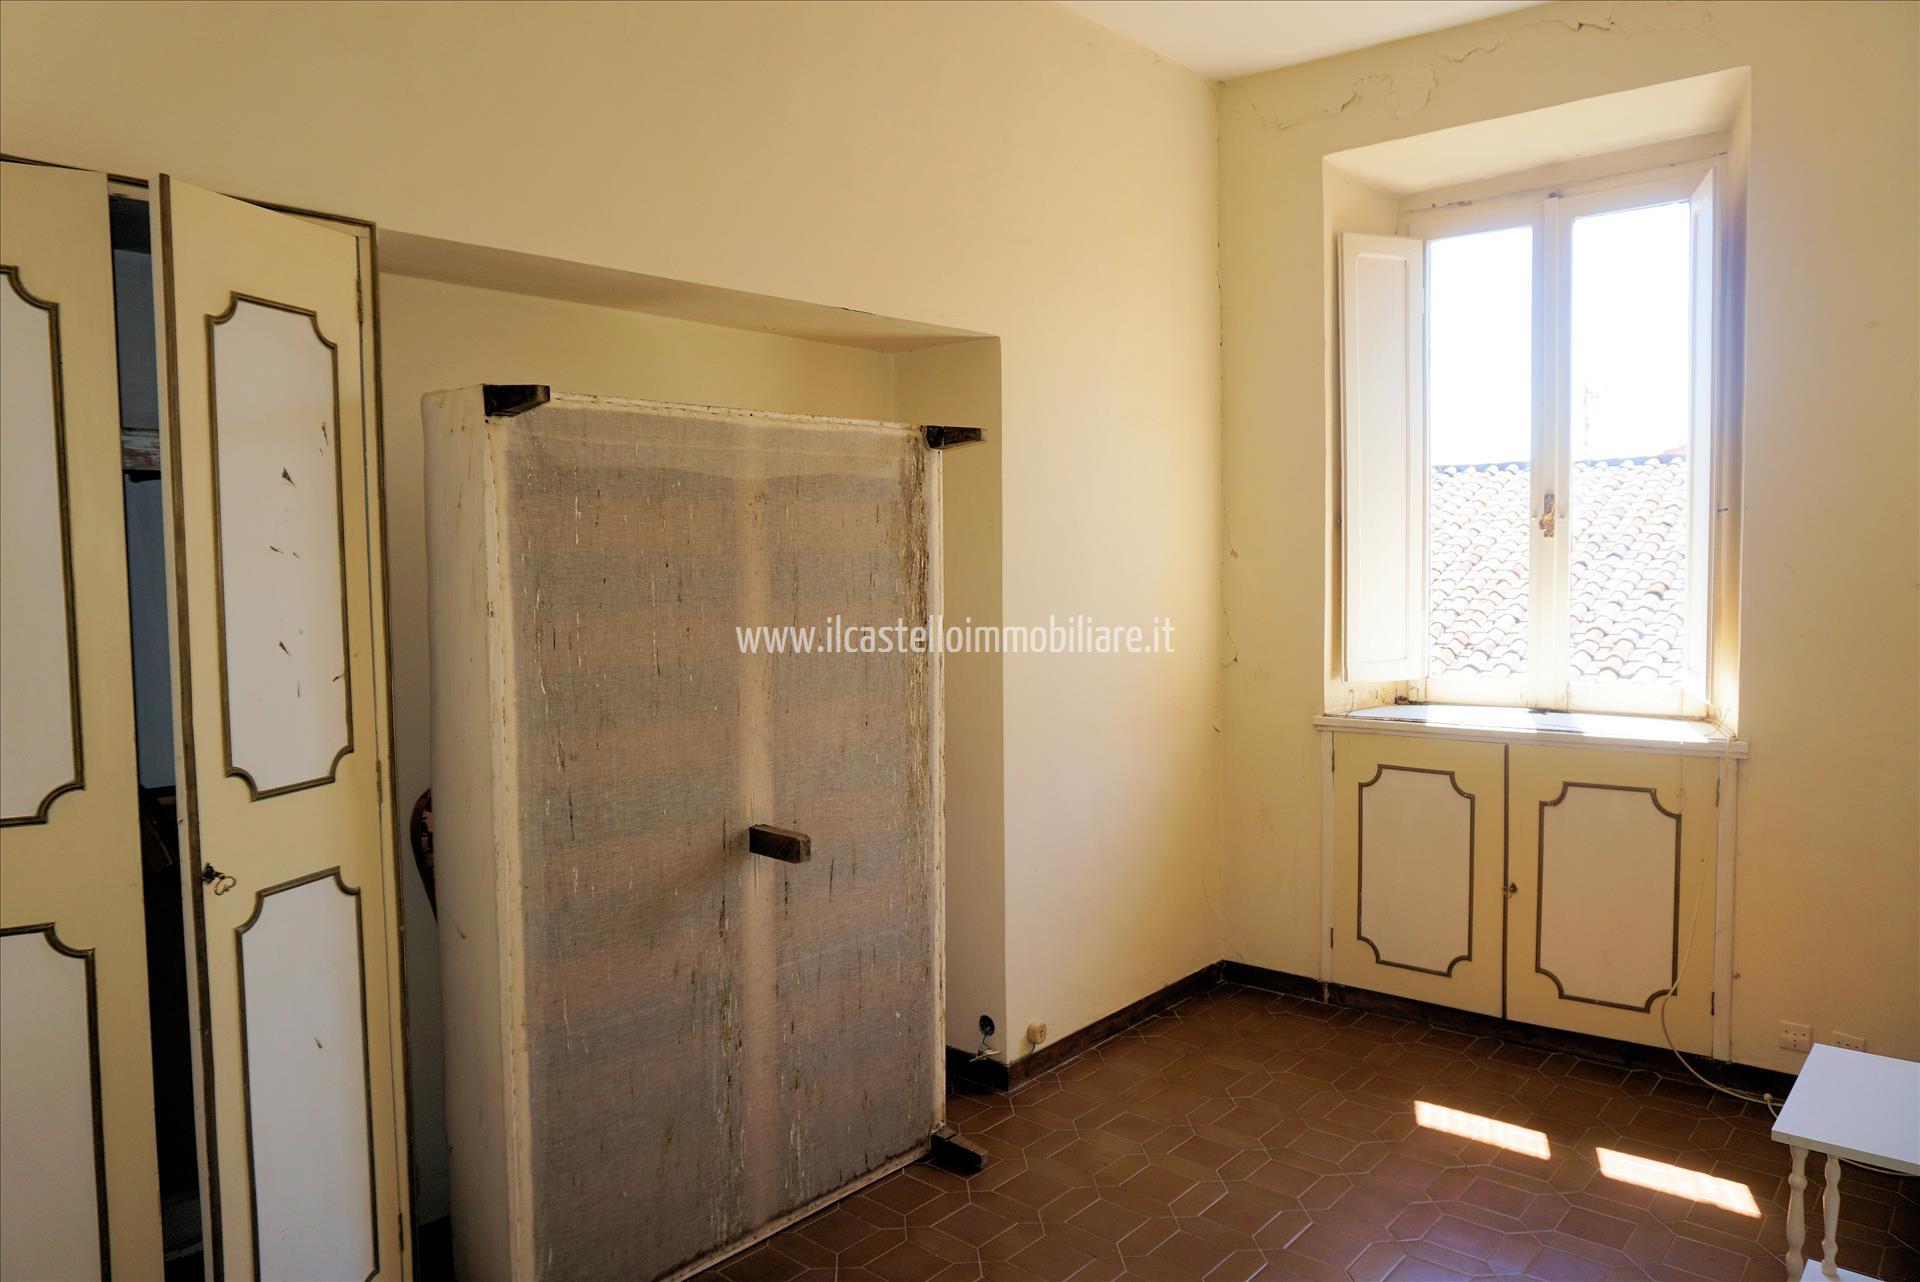 Appartamento in vendita a Sarteano, 1 locali, prezzo € 25.000 | PortaleAgenzieImmobiliari.it